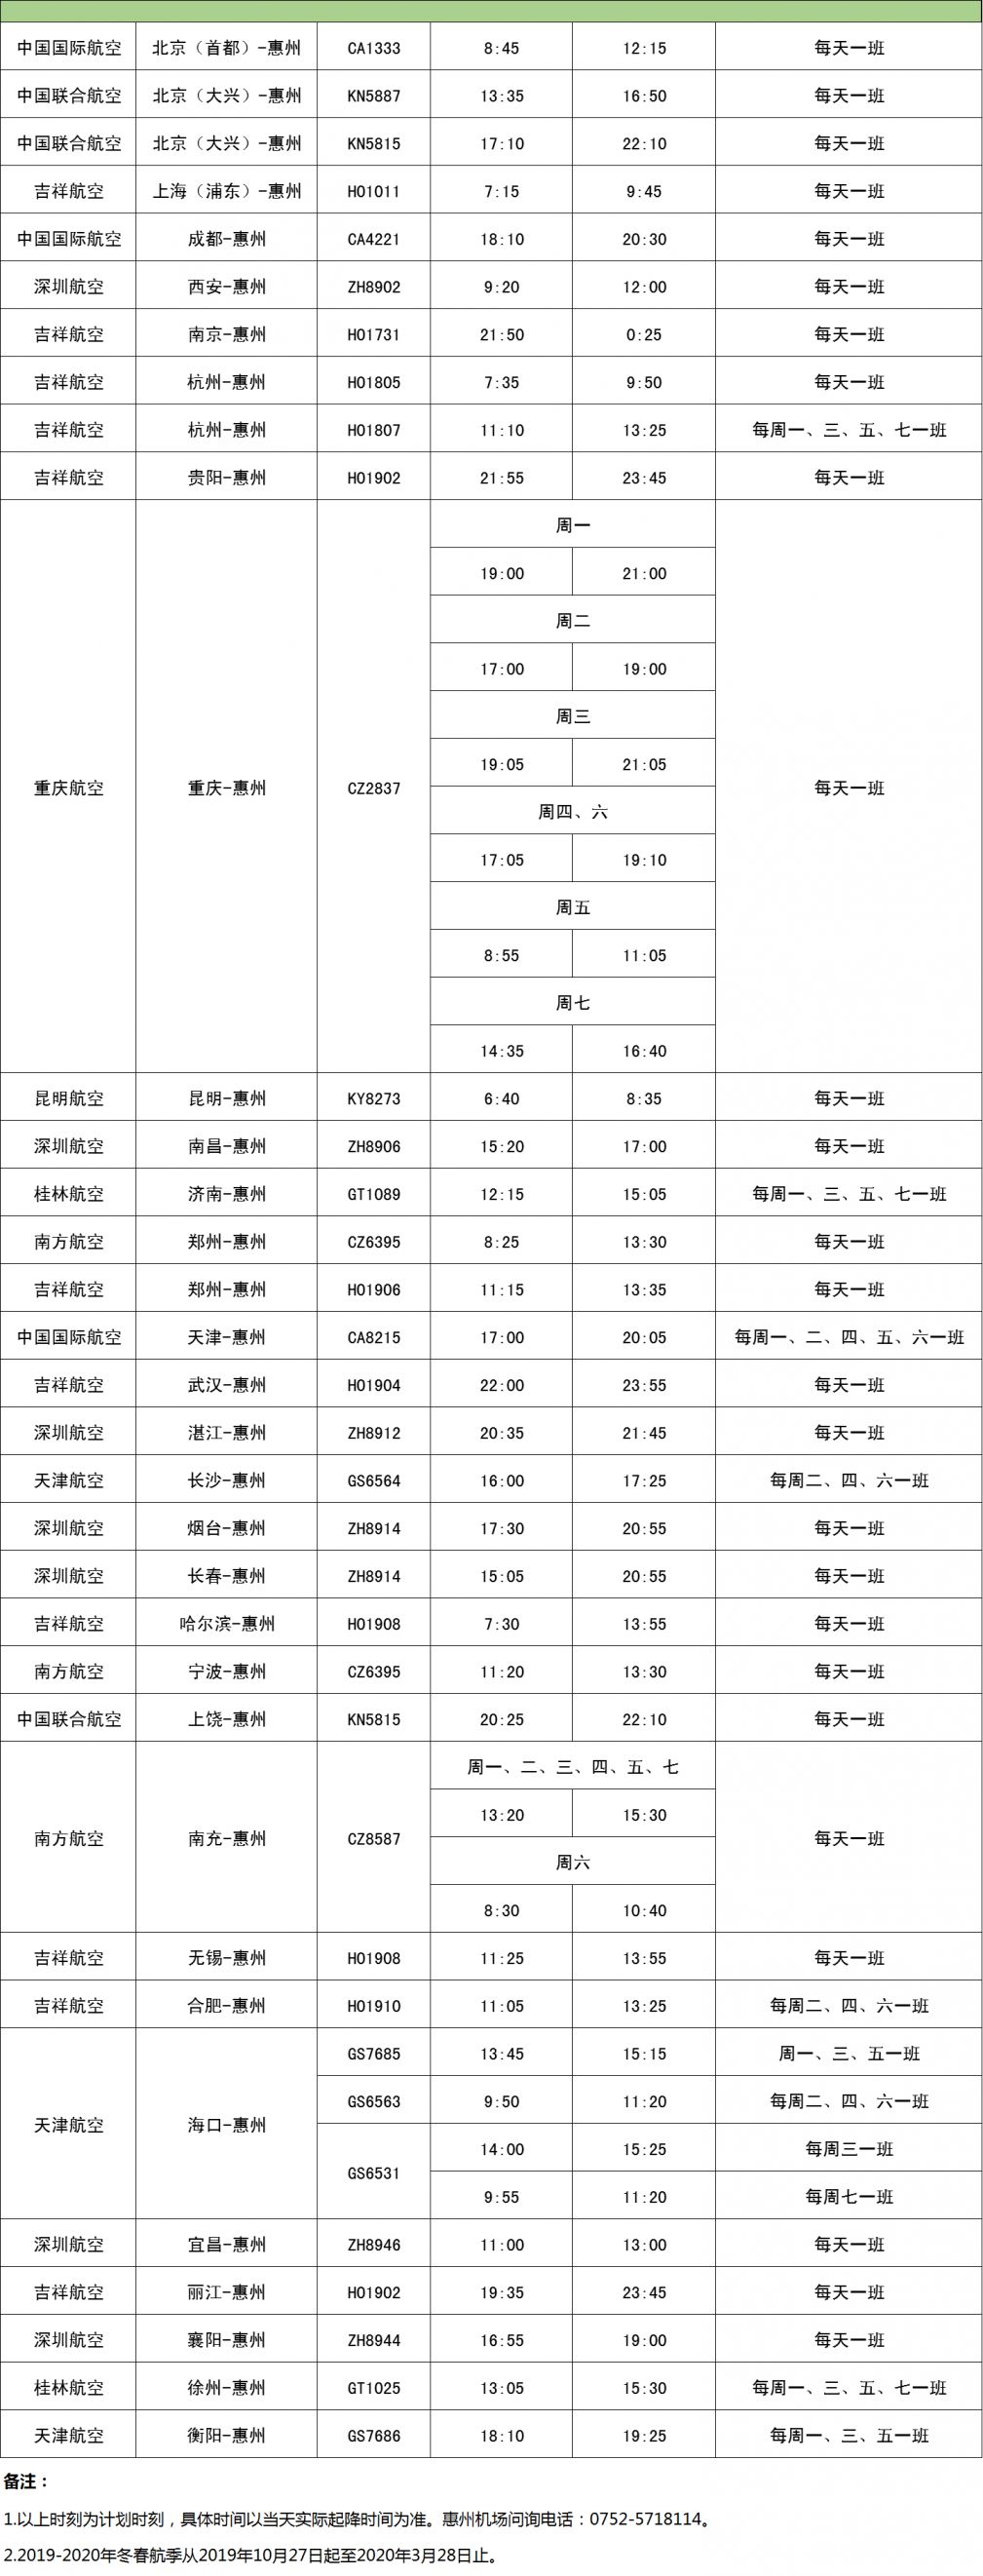 2019-2020年惠州机场冬春航季航班时刻计划表